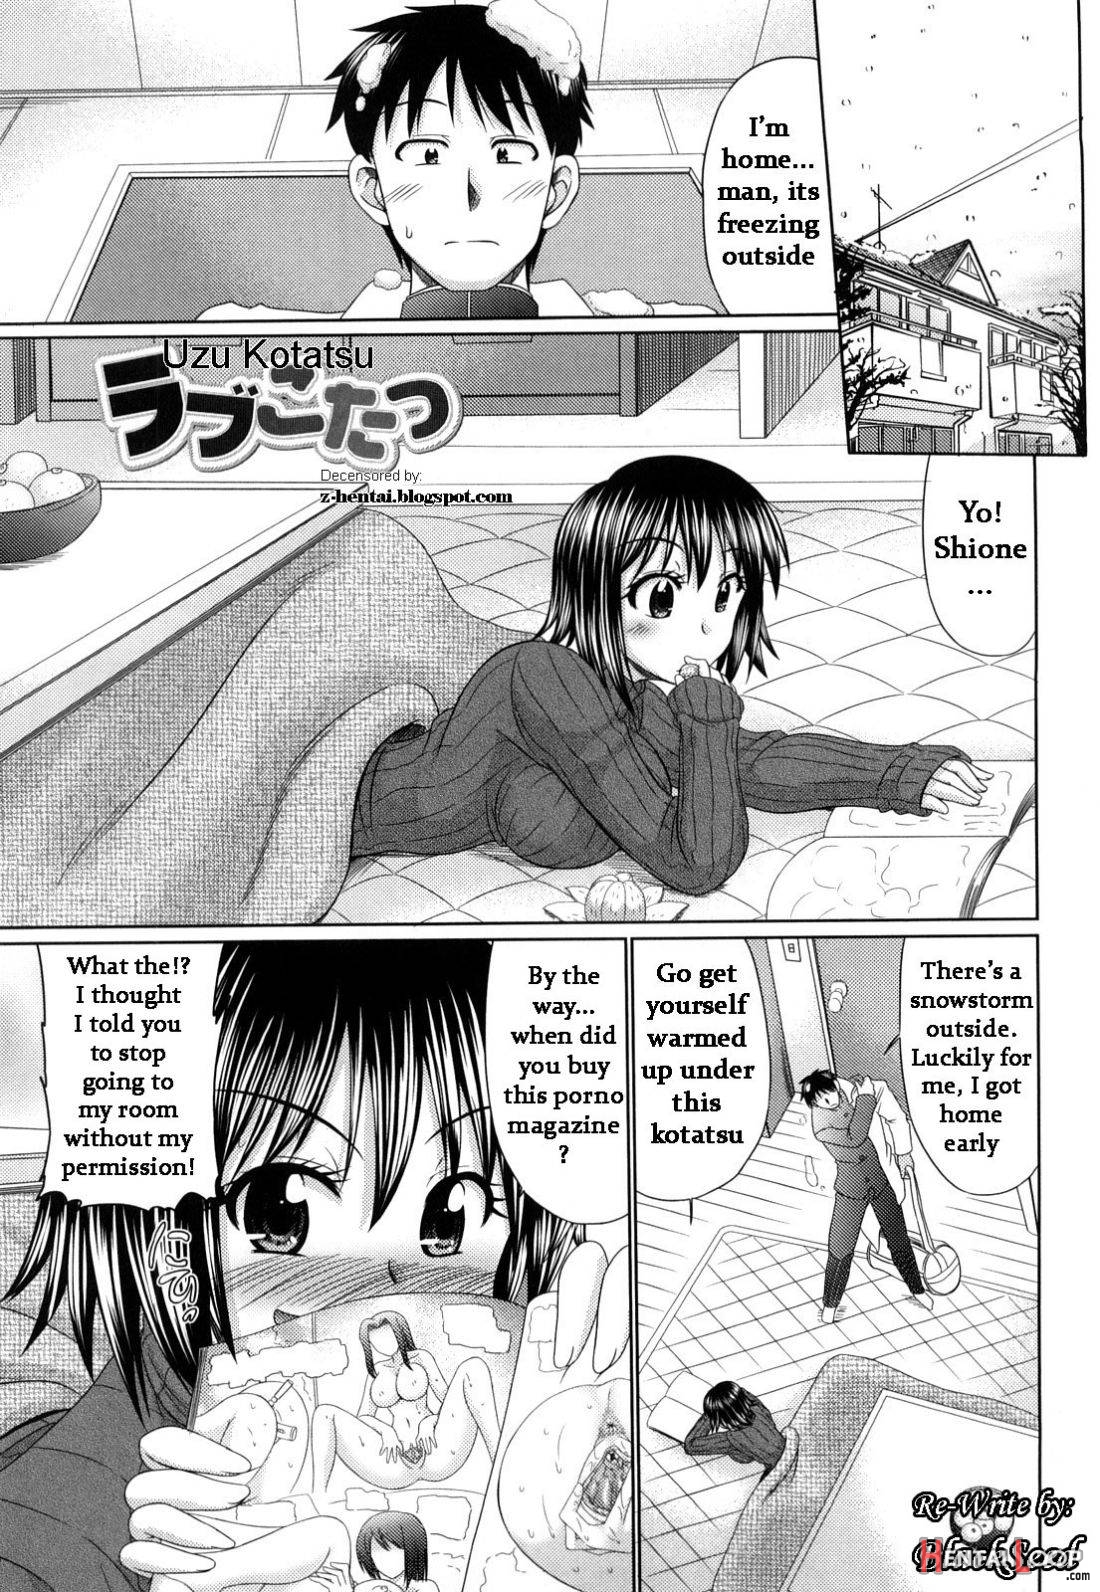 Uzu Kotatsu page 1